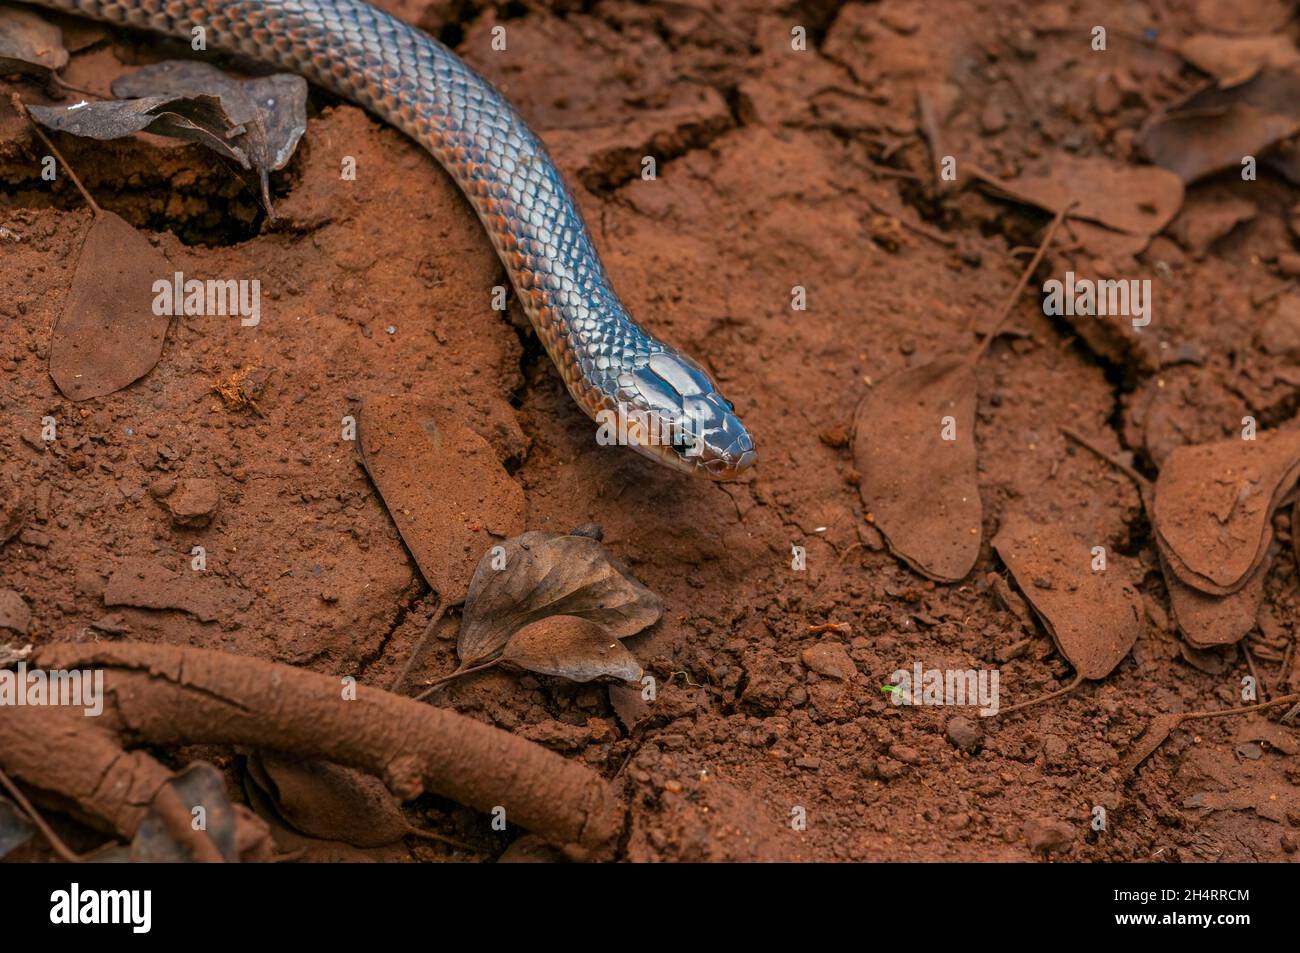 A carpentaria snake Cryptophis boschmai in central Queensland, Australia Stock Photo